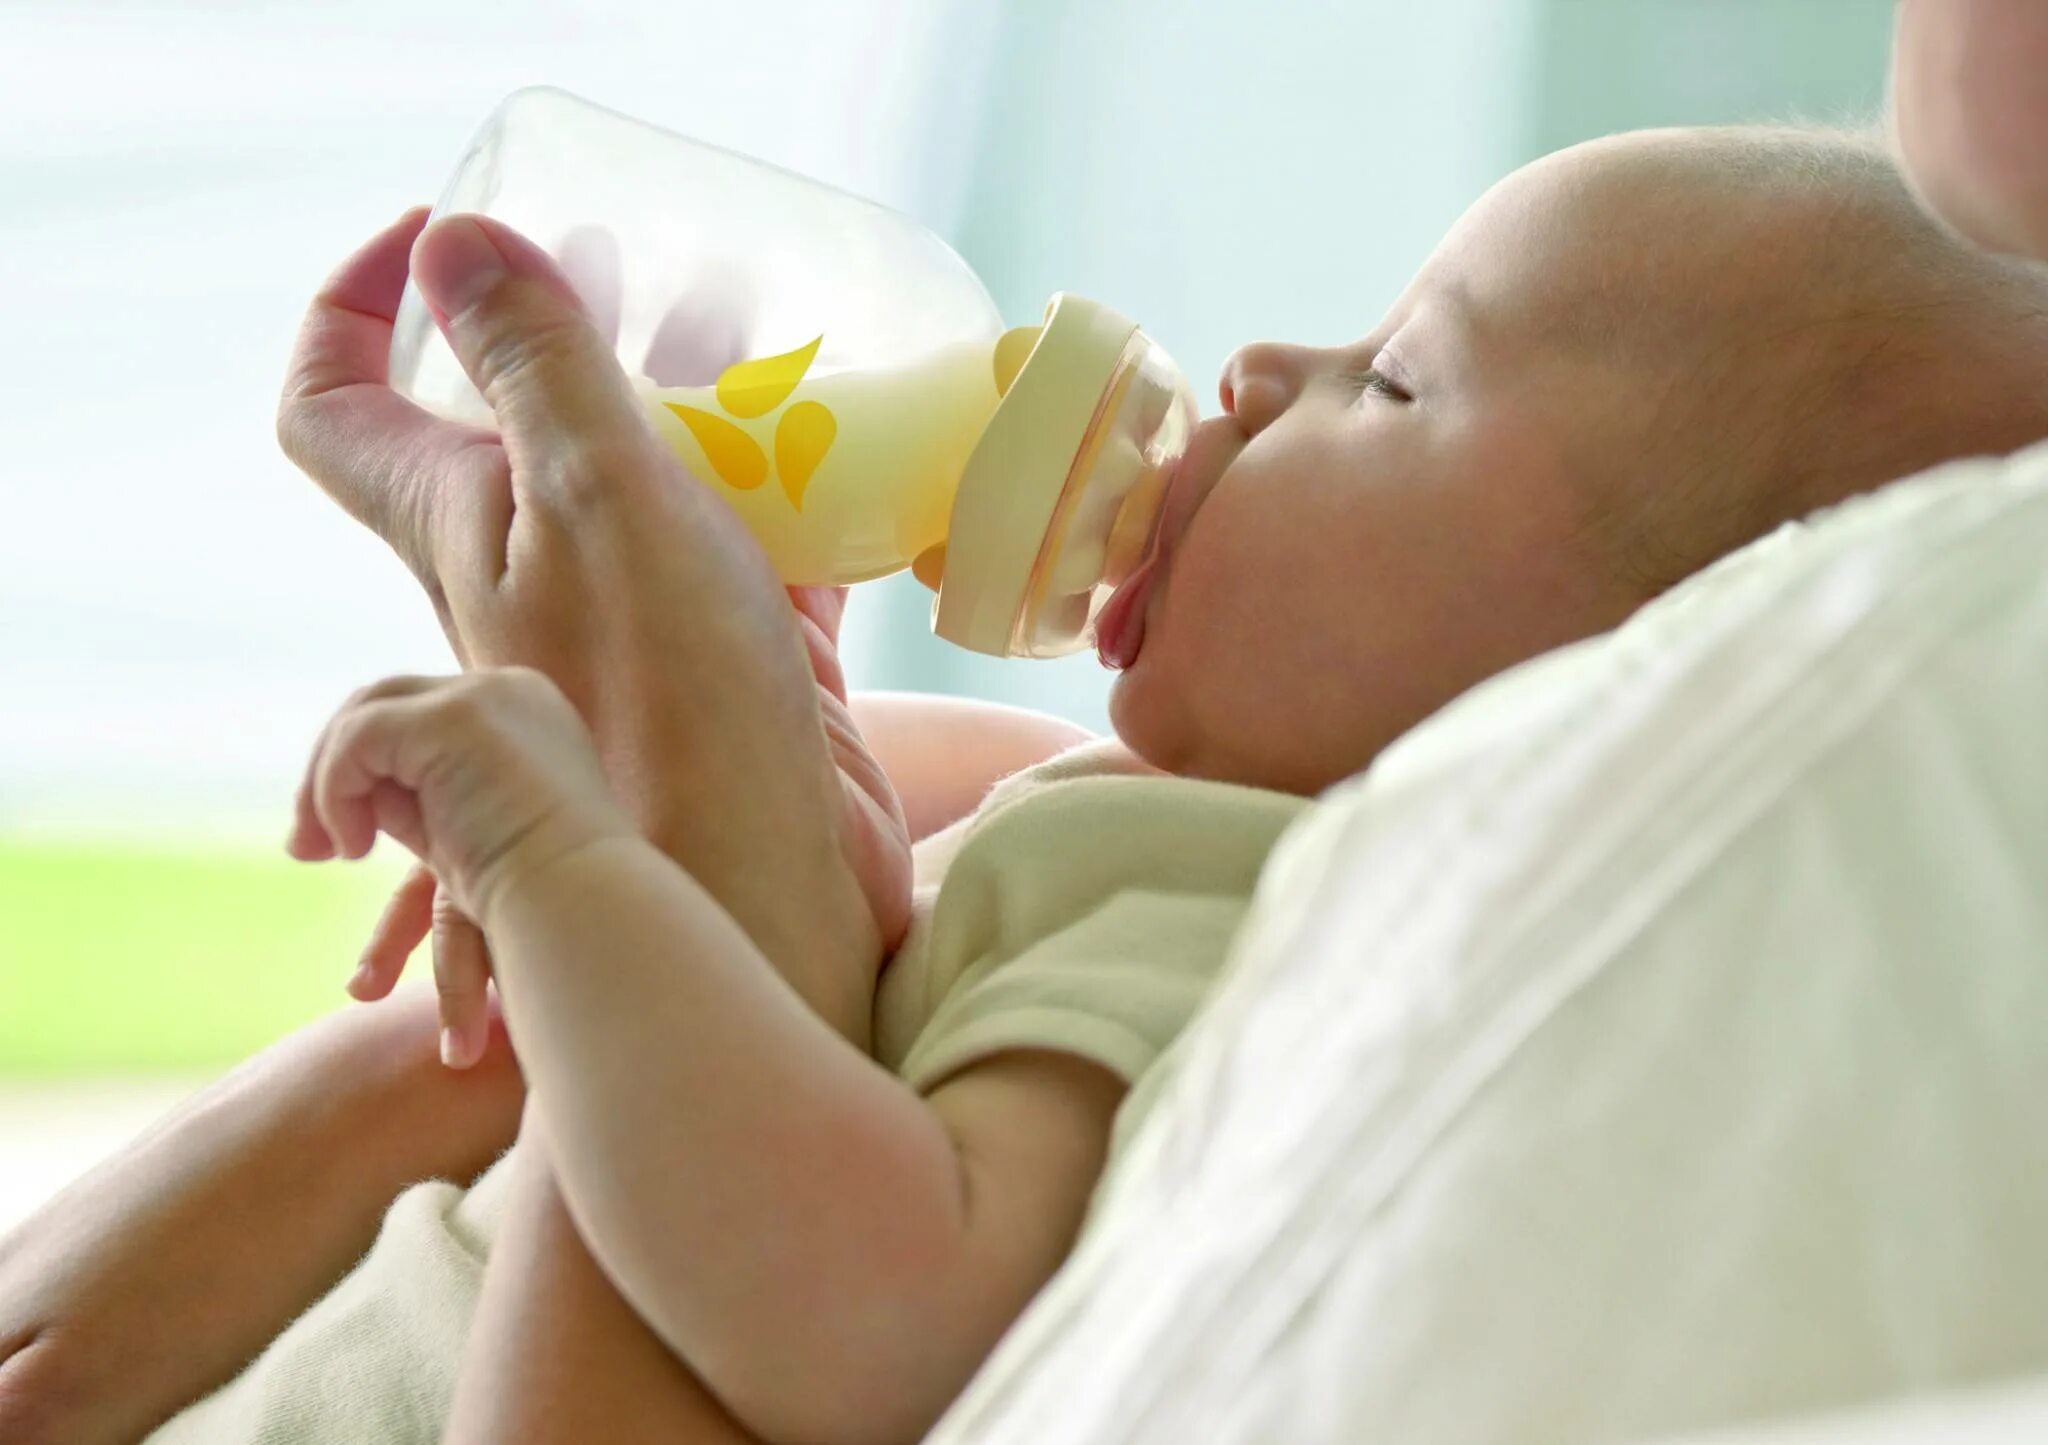 Бутылочка для докорма новорожденного. Грудное и искусственное вскармливание. Кормление ребенка из бутылочки. Кормление новорожденного ребенка из бутылочки. Искусственное вскармливание как кормить